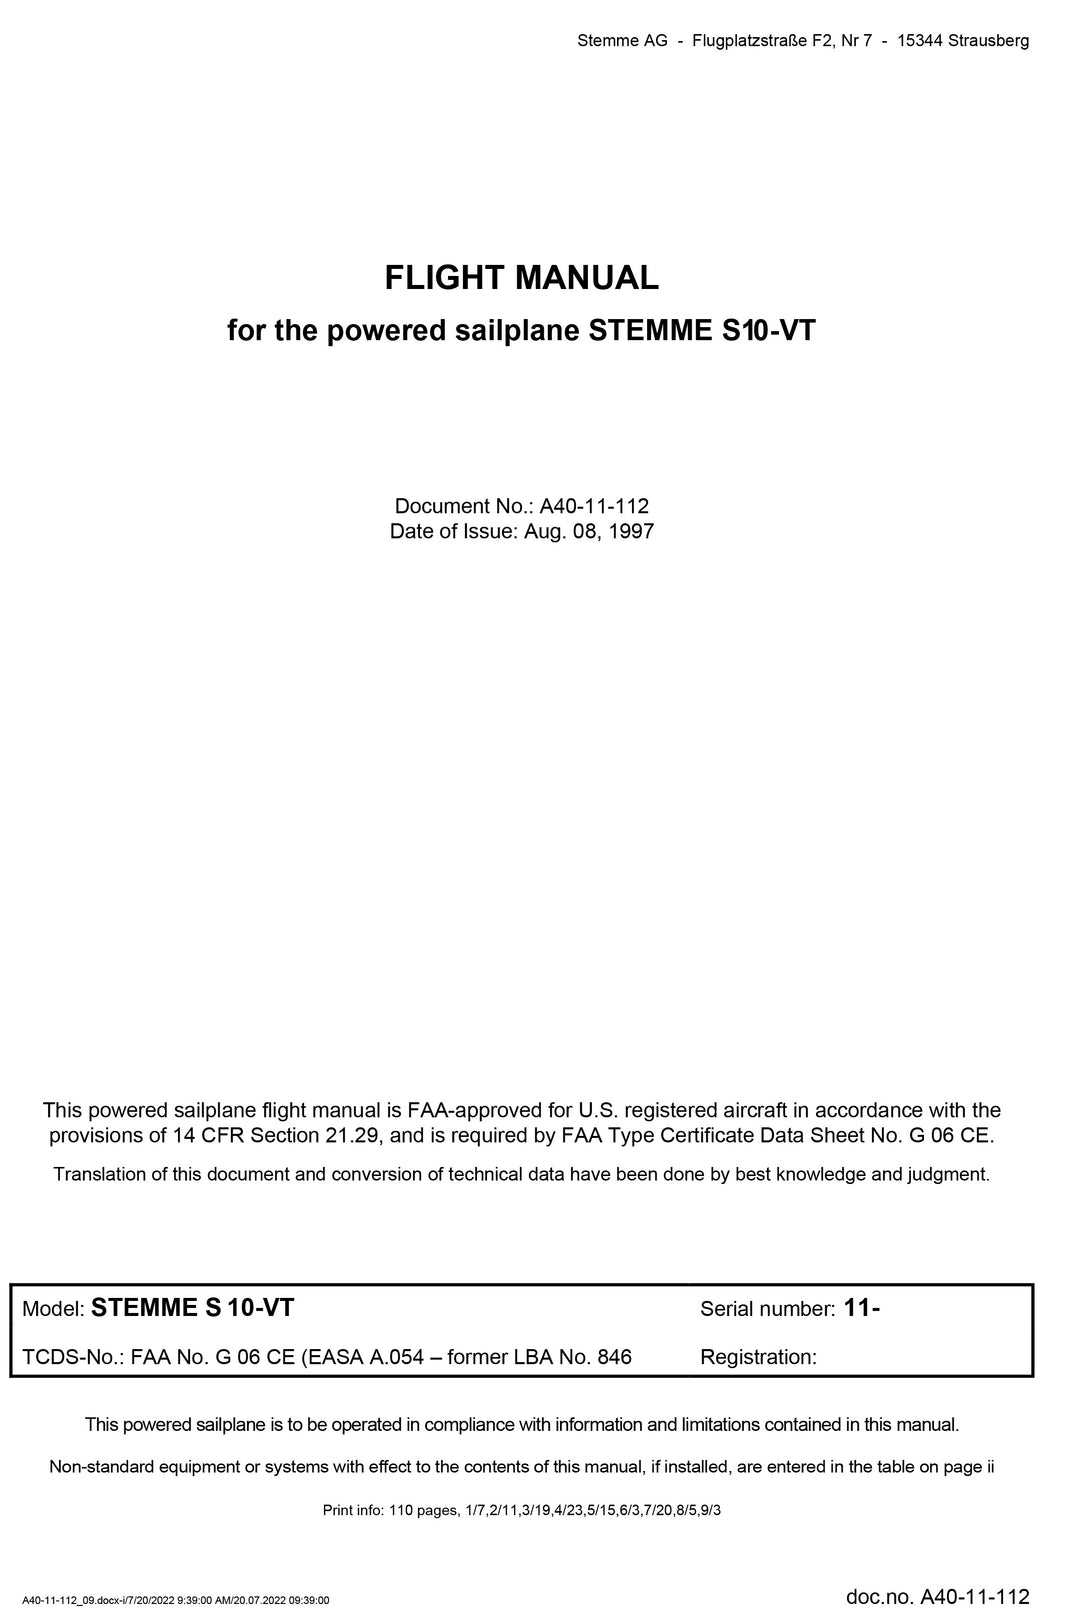 S10-VT Flight Manual Revision